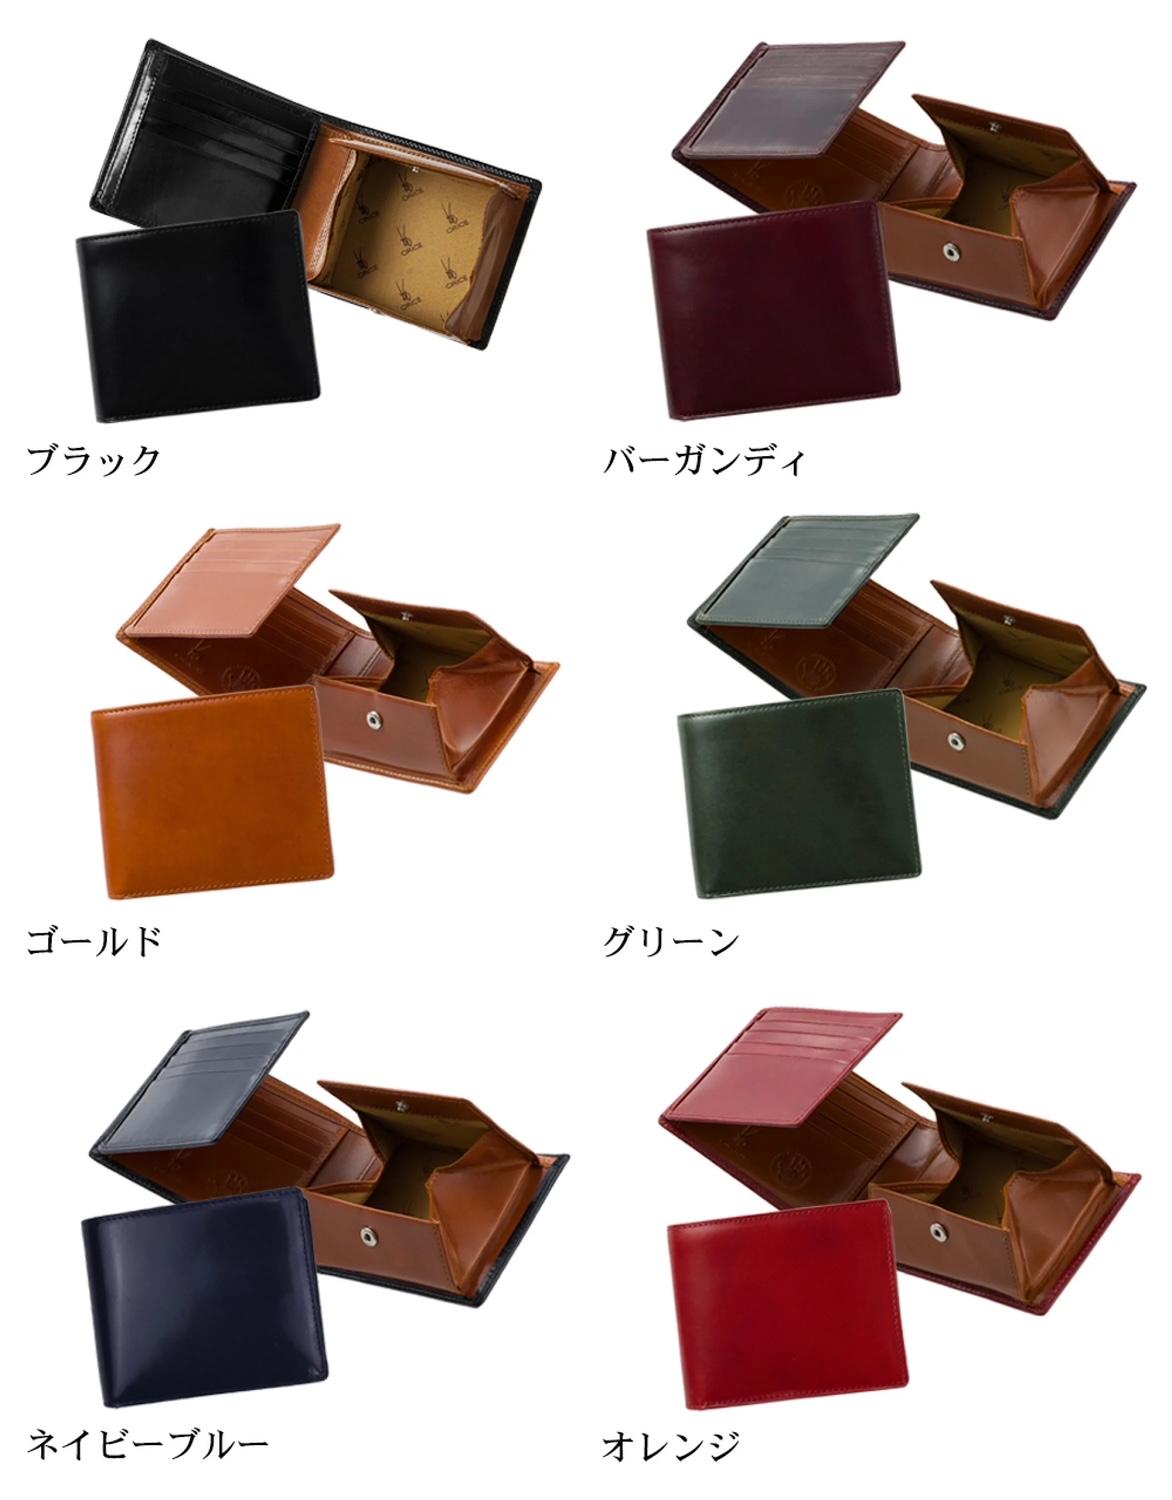 Orice（オリーチェ）のボックス型コインポケットタイプの二つ折り財布